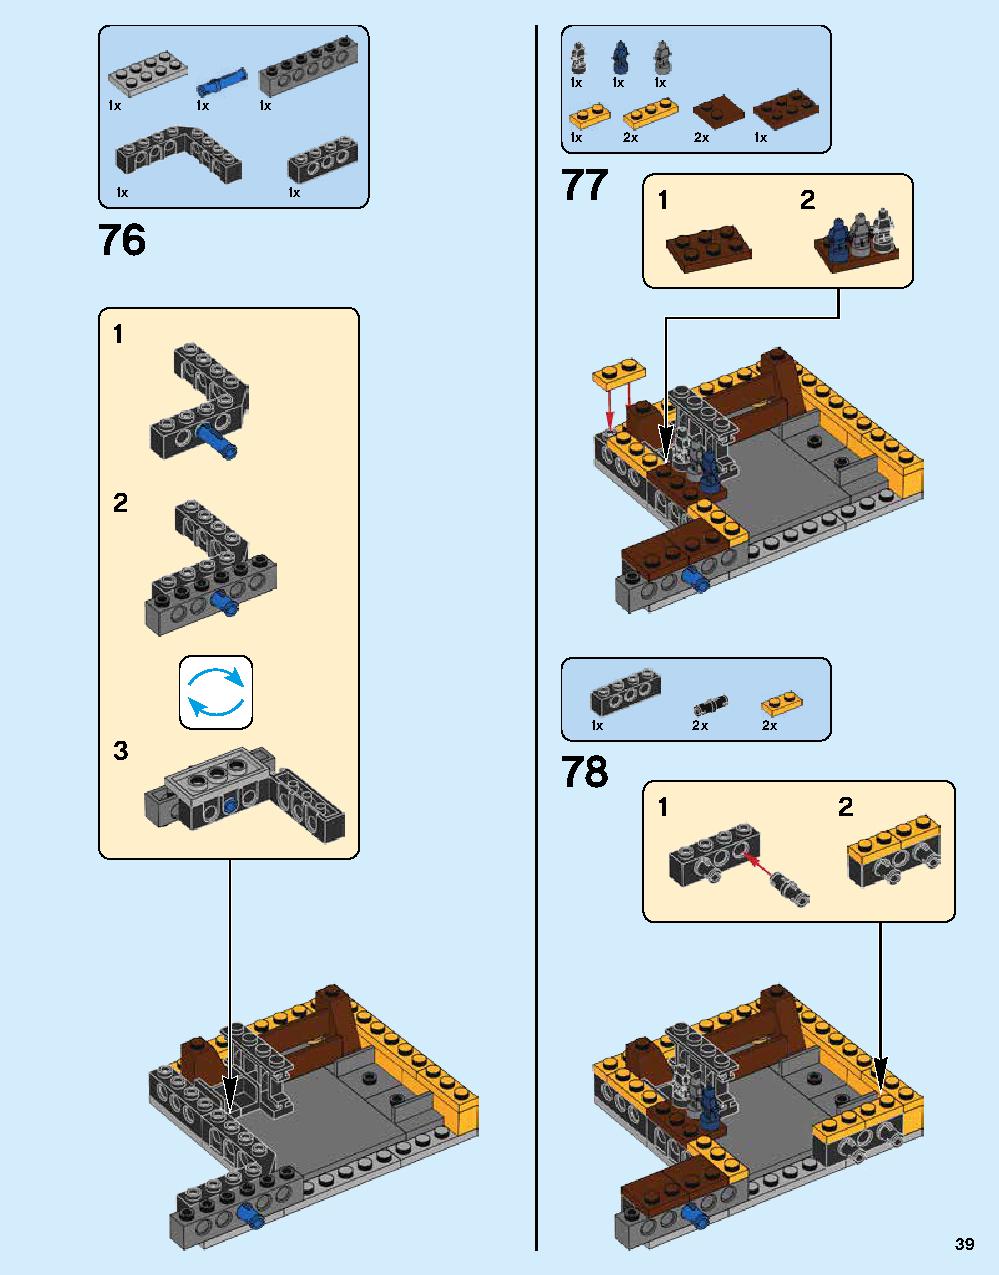 ニンジャゴー シティ 70620 レゴの商品情報 レゴの説明書・組立方法 39 page